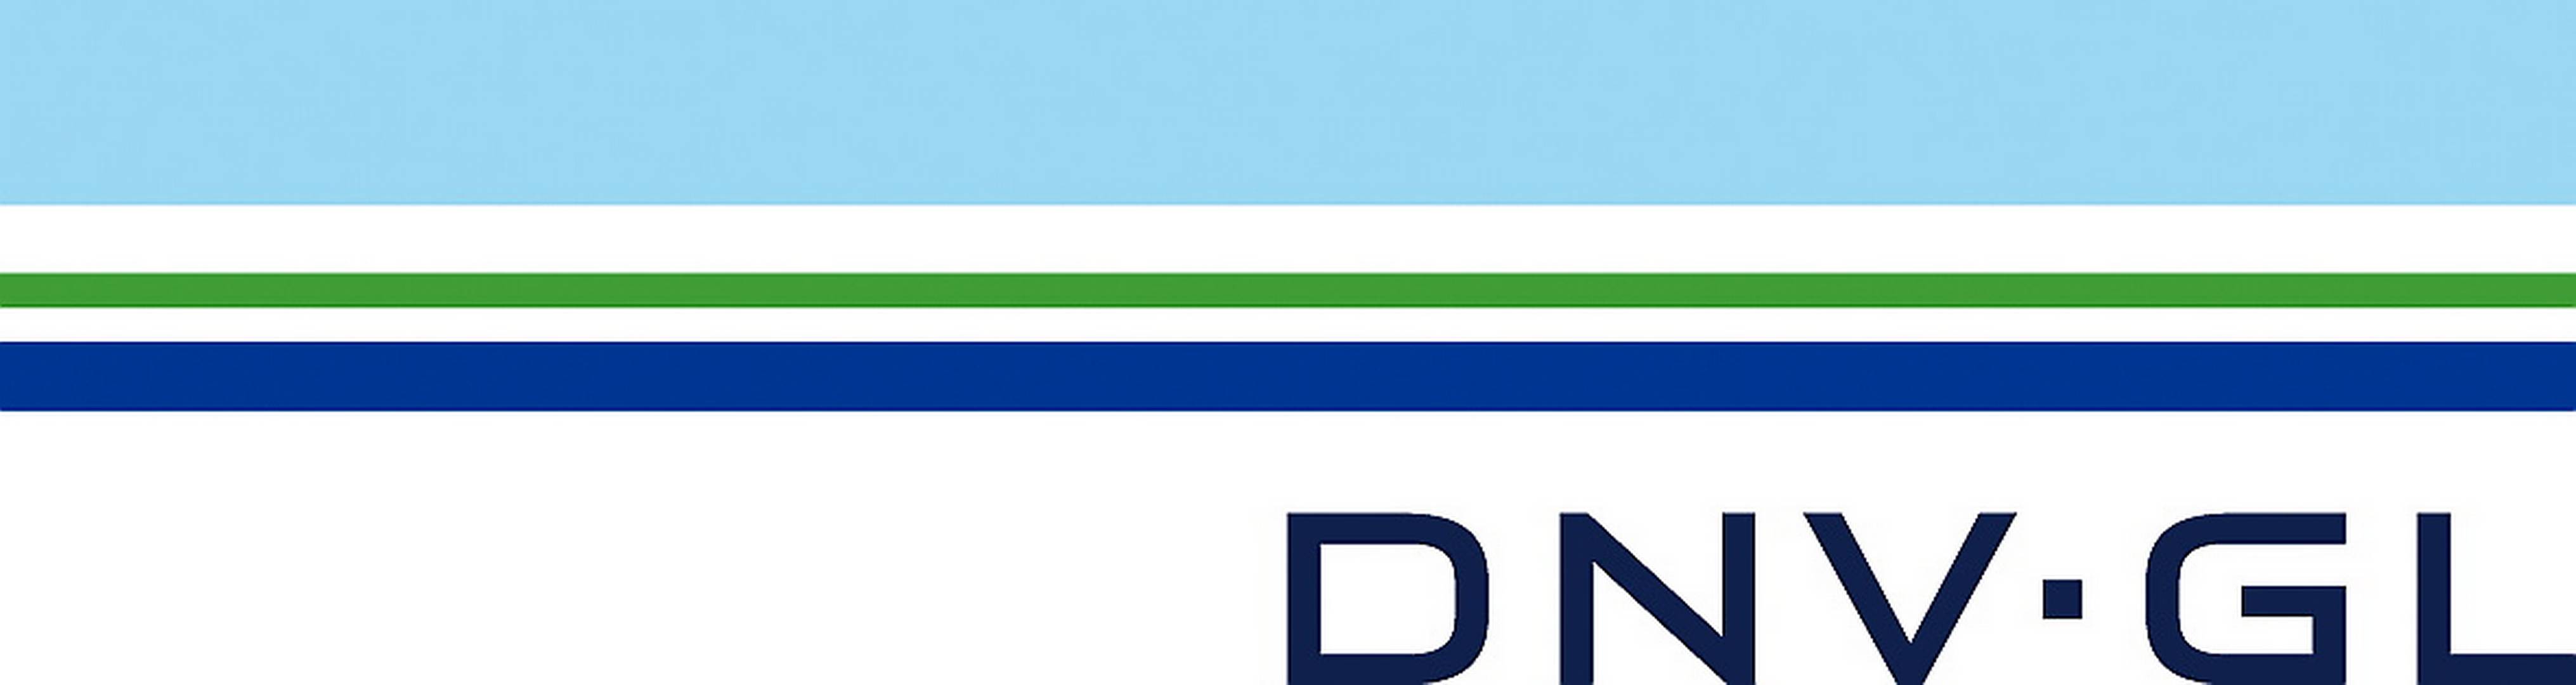 DNV GL logo large